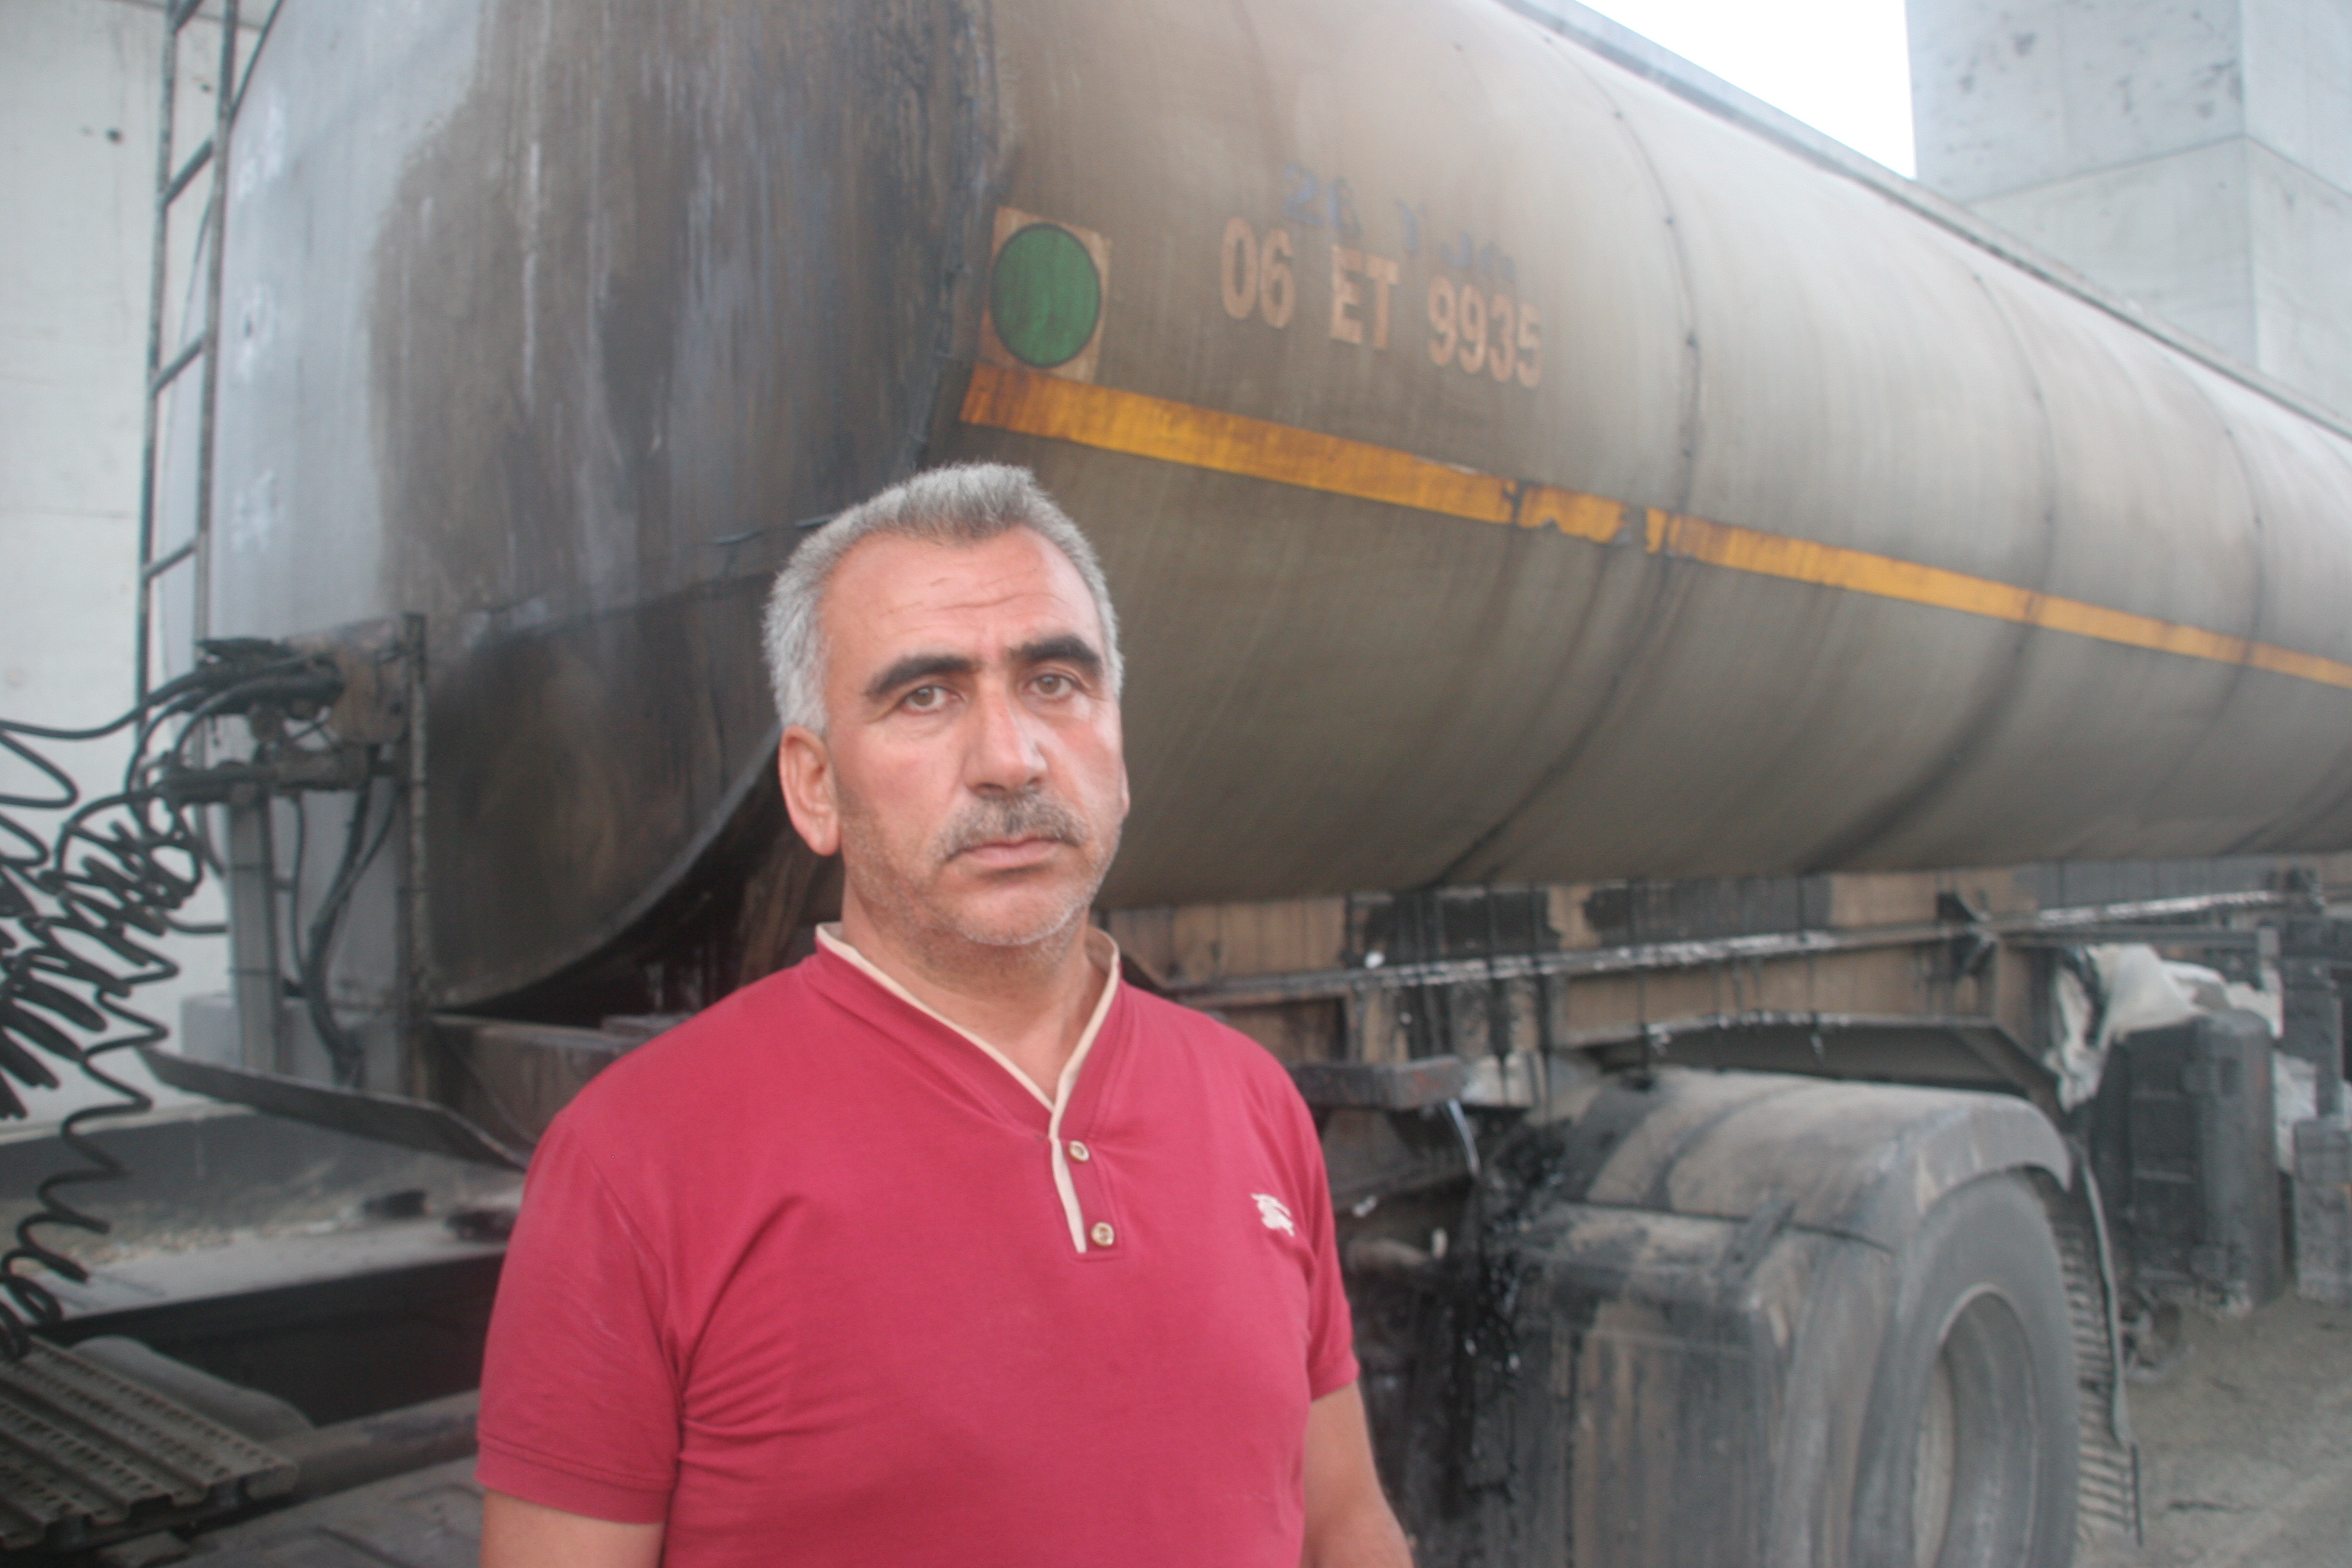 قام مولود كان دمير سائق الشاحنة بمنع مرور حافلة تُقلّ طلبة المدرسة الحربية الجوية كانت قادمة من يالوفا إلى إسطنبول من أجل السيطرة على مطار صبيحة غوكجن ليلة 15 يوليو/تموز.